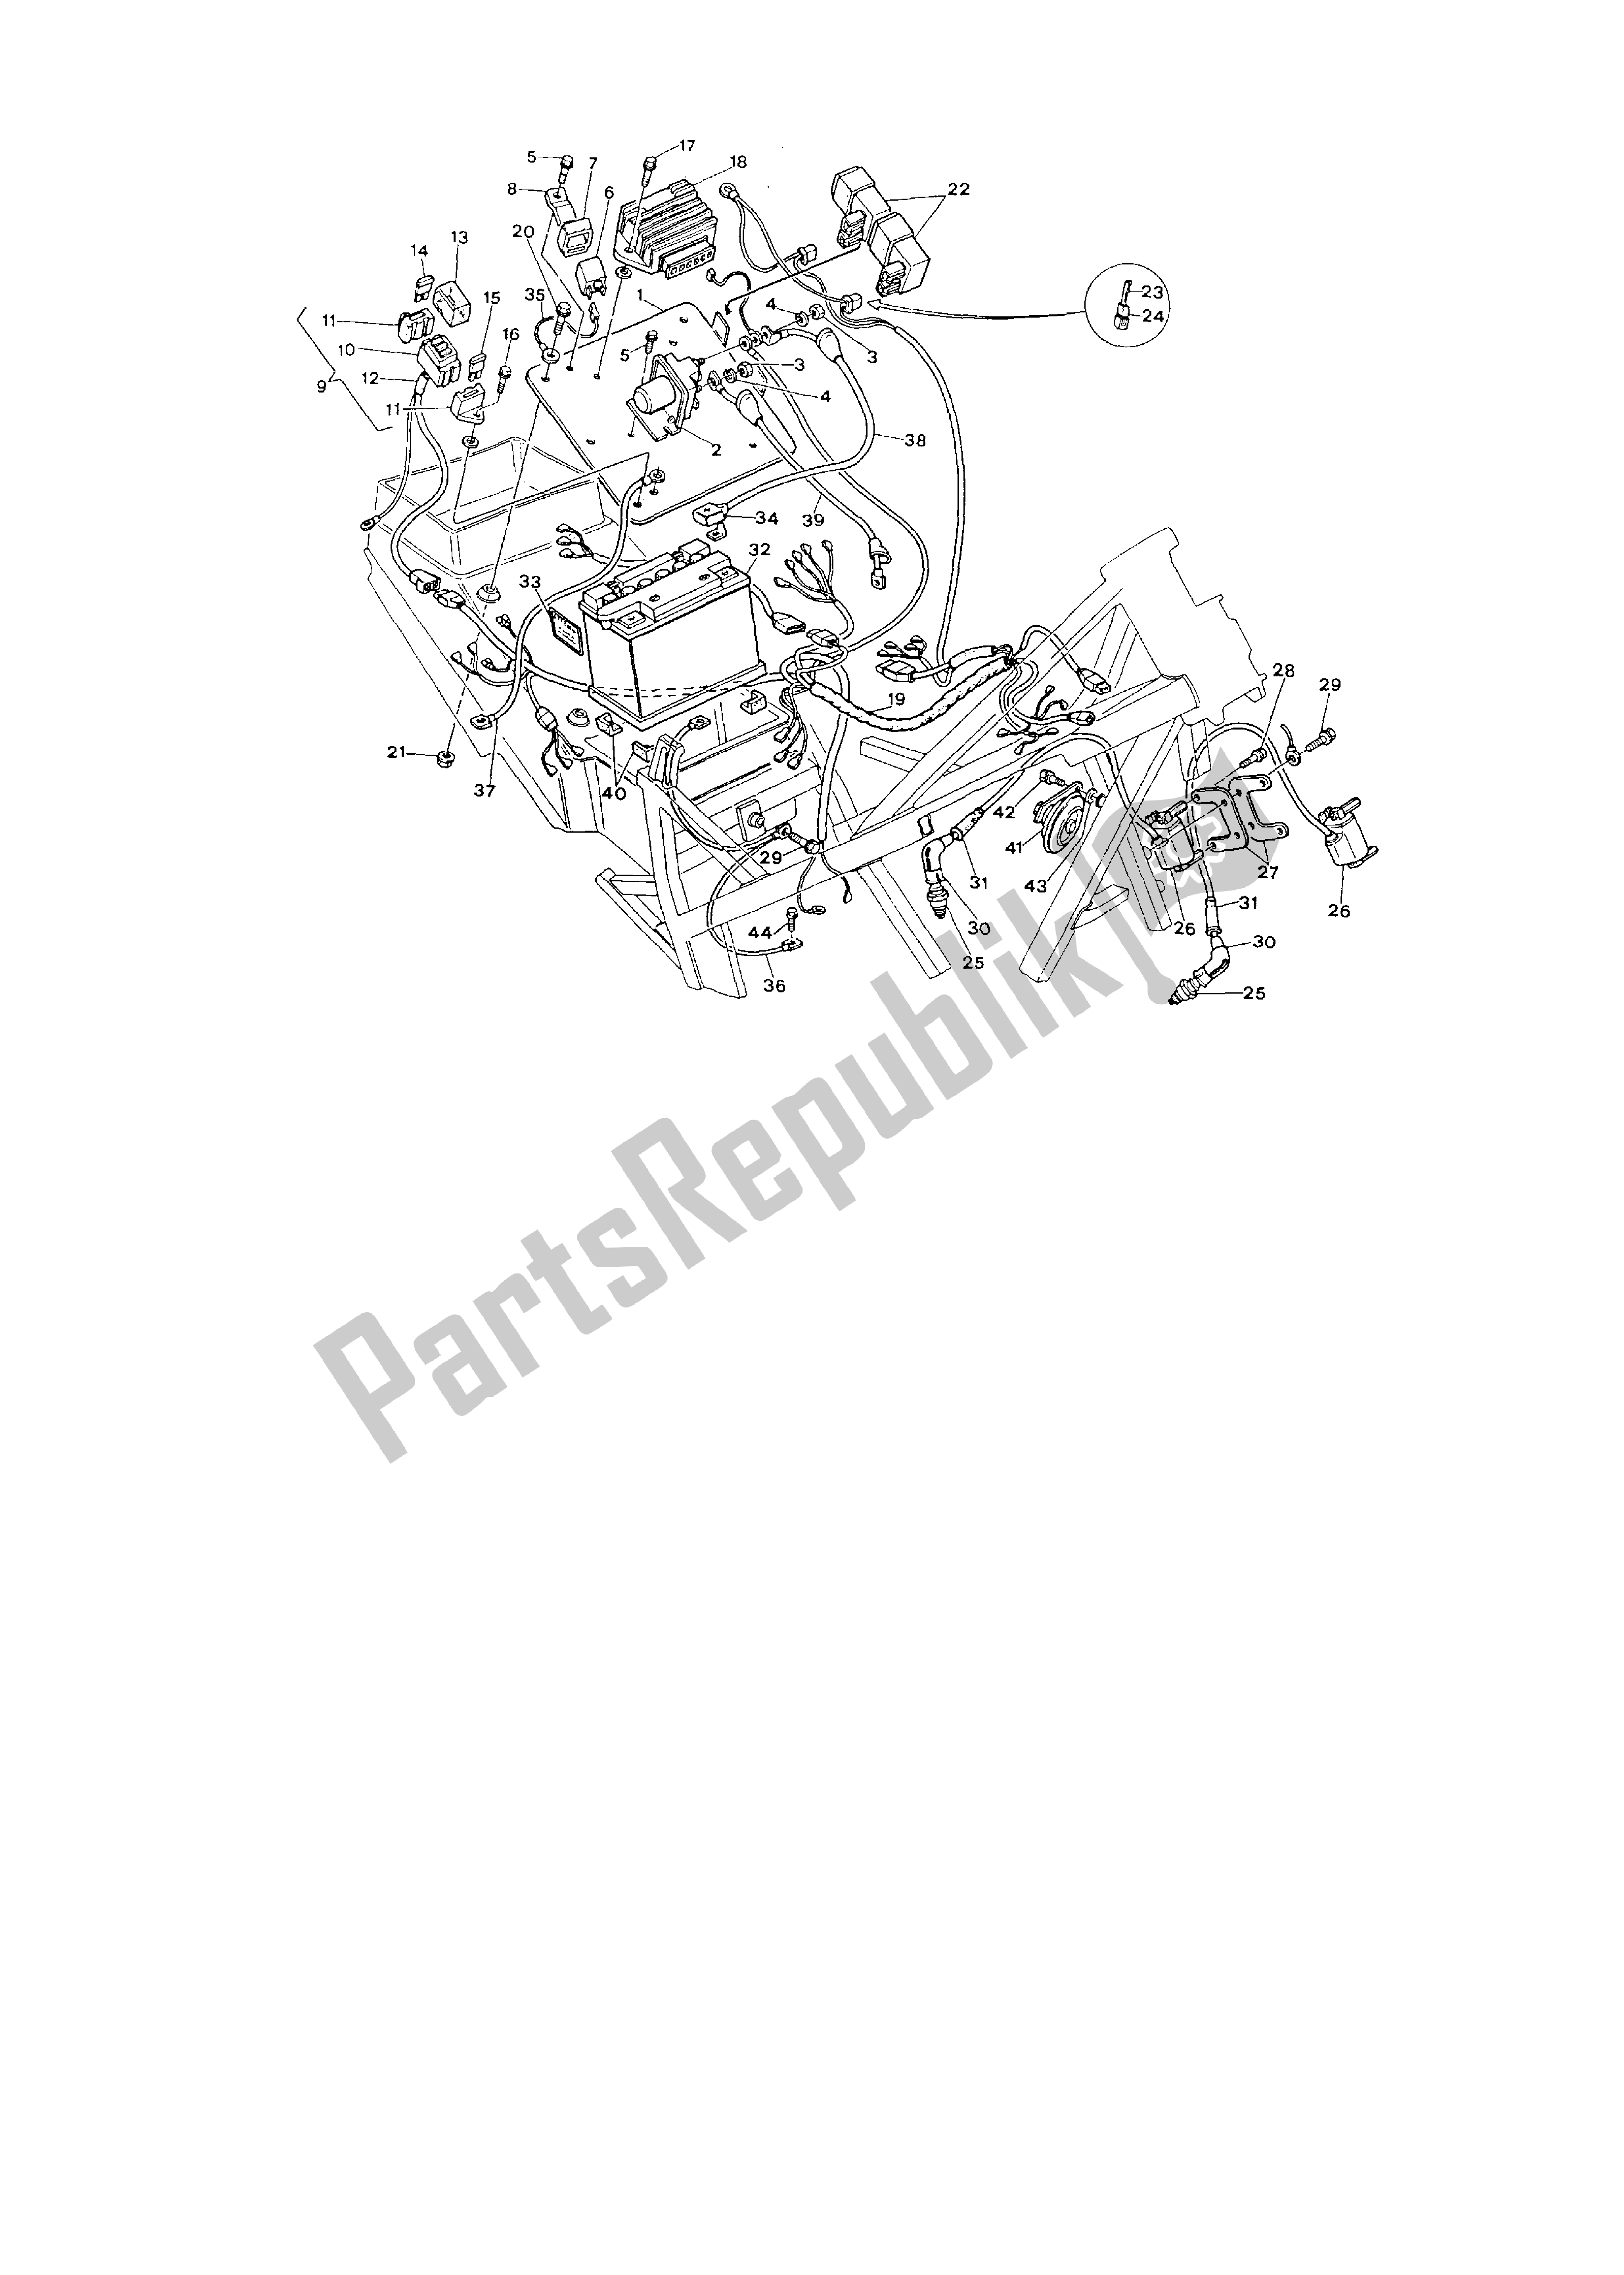 Todas las partes para Sistema Electrico de Ducati Paso 750 1986 - 1988